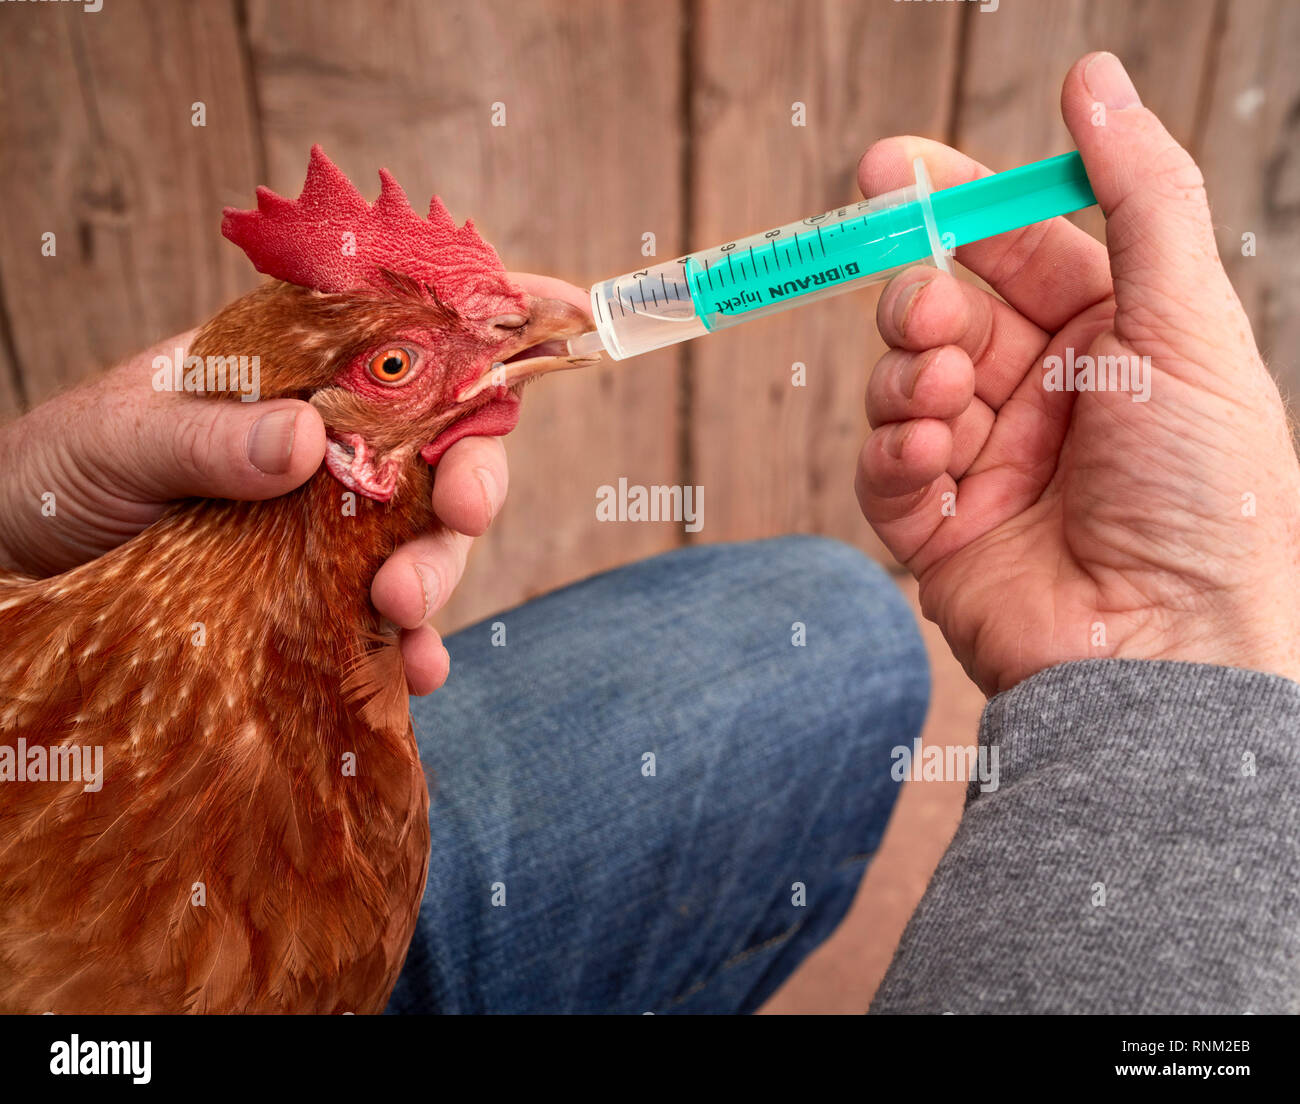 Pollo doméstico. Uando obtiene un medicamento líquido administrado. Alemania. Foto de stock